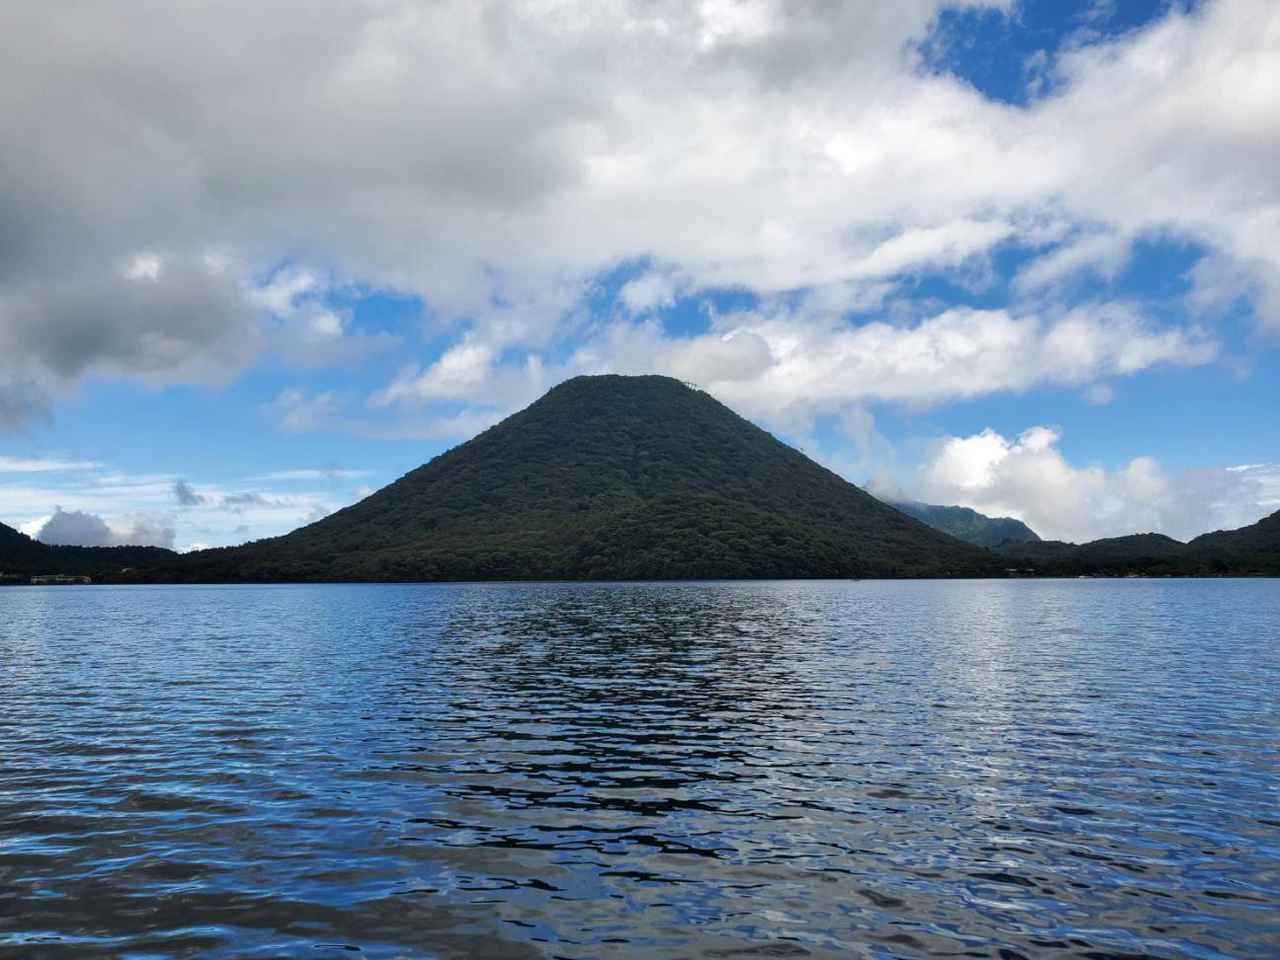 榛名湖でワカサギ釣り キャンプ 紅葉がきれいな湖は初心者でも大漁間違いなしの楽園だった お役立ちキャンプ情報 21年09月28日 日本気象協会 Tenki Jp